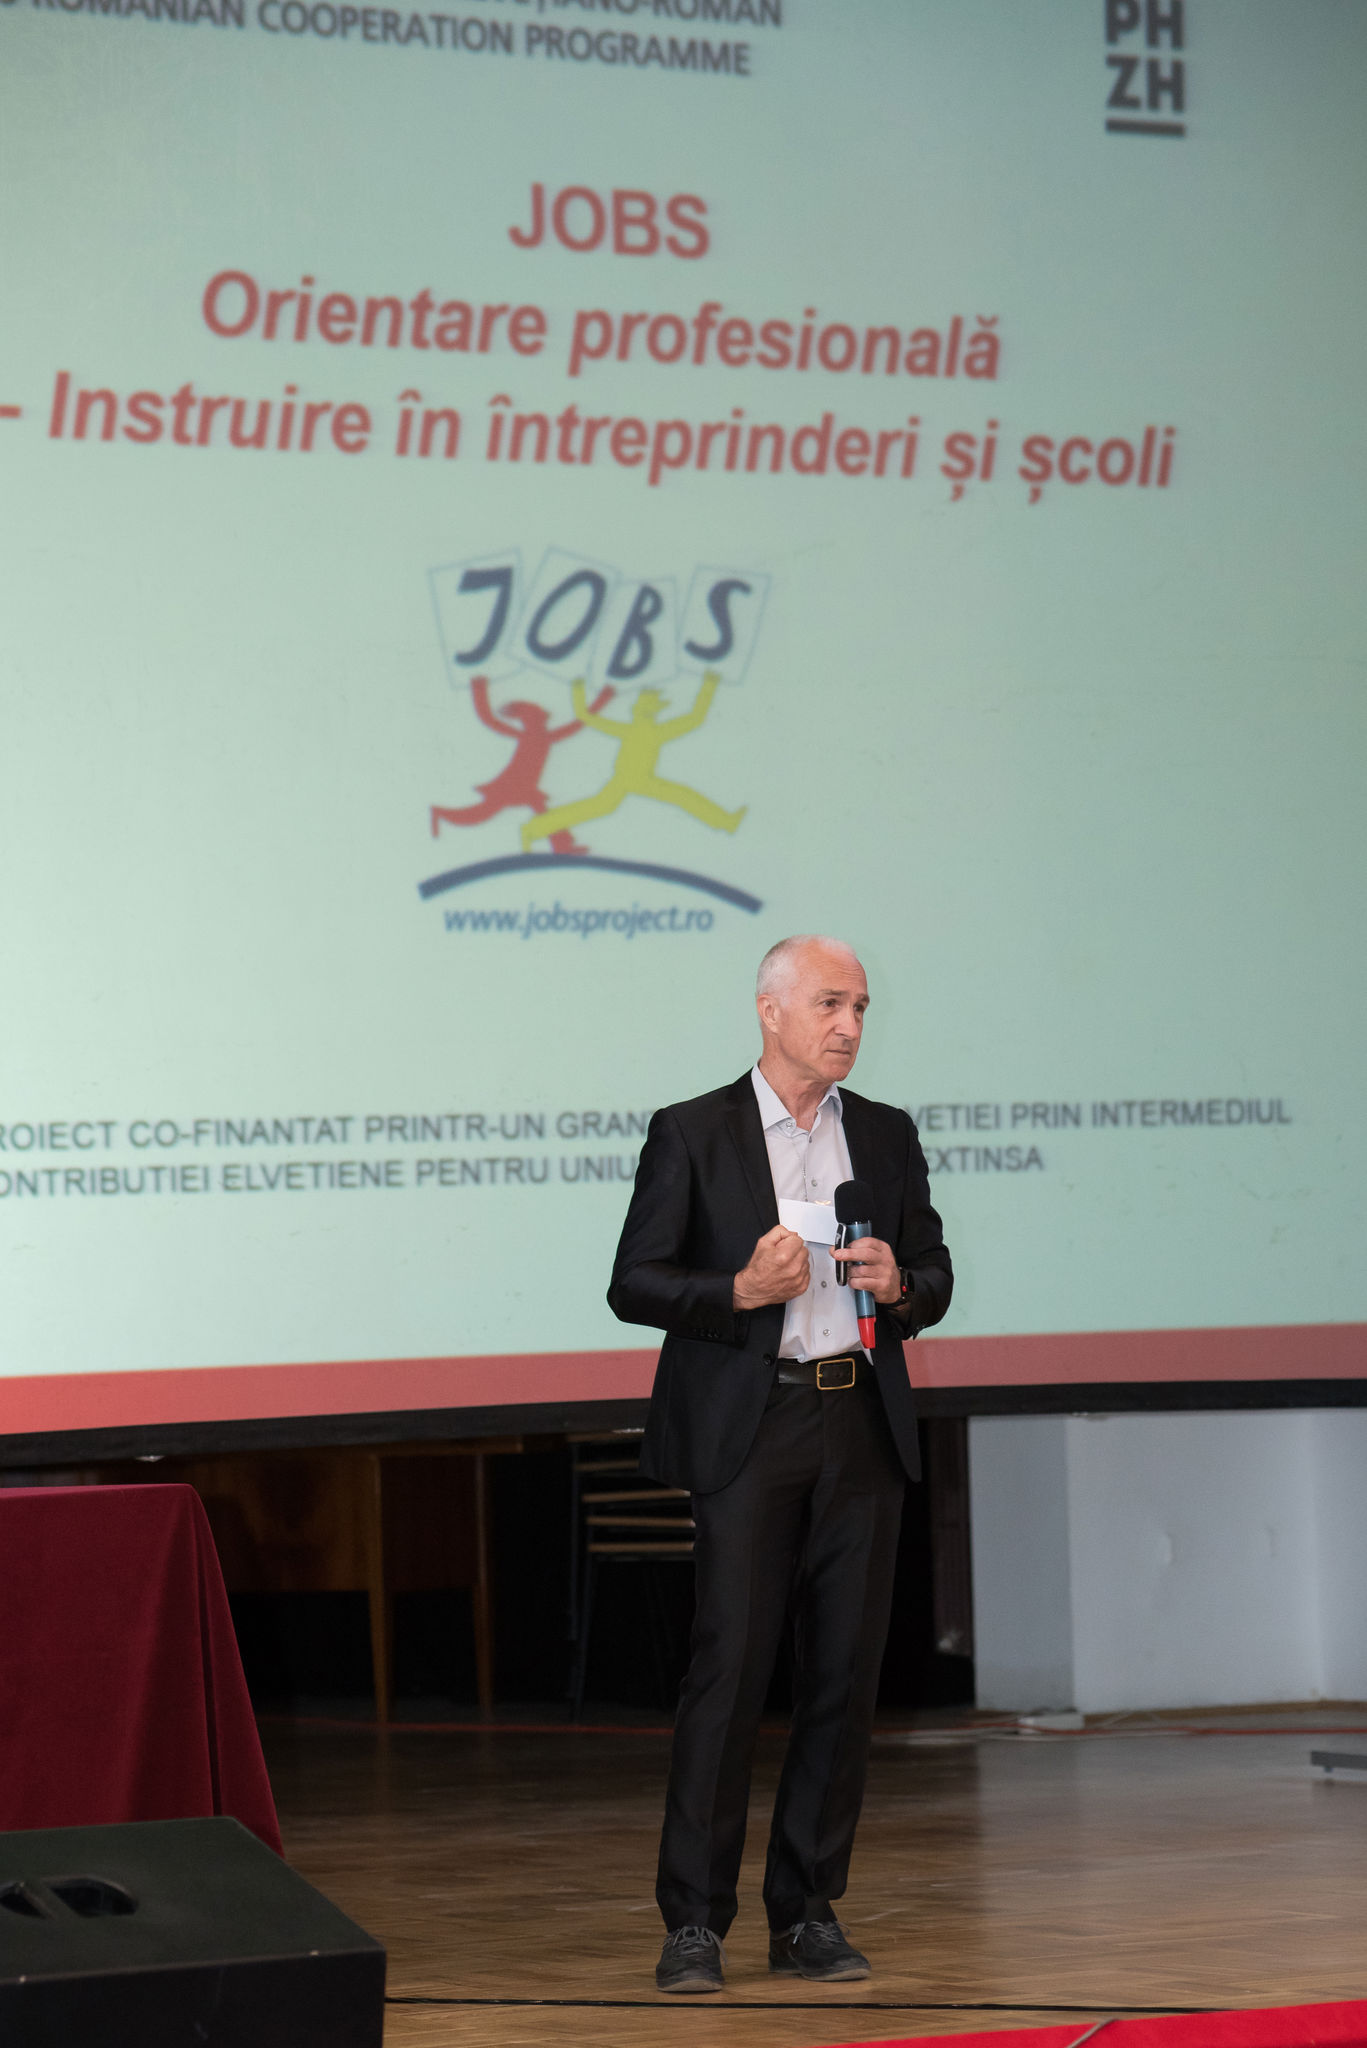 Rolf Gollob vom Zentrum Inernational Projects in Education (IPE) der Pädagogischen Hochschule Zürich betonte die Wichtigkeit der Berufswahlorientierung in seiner Ansprache.